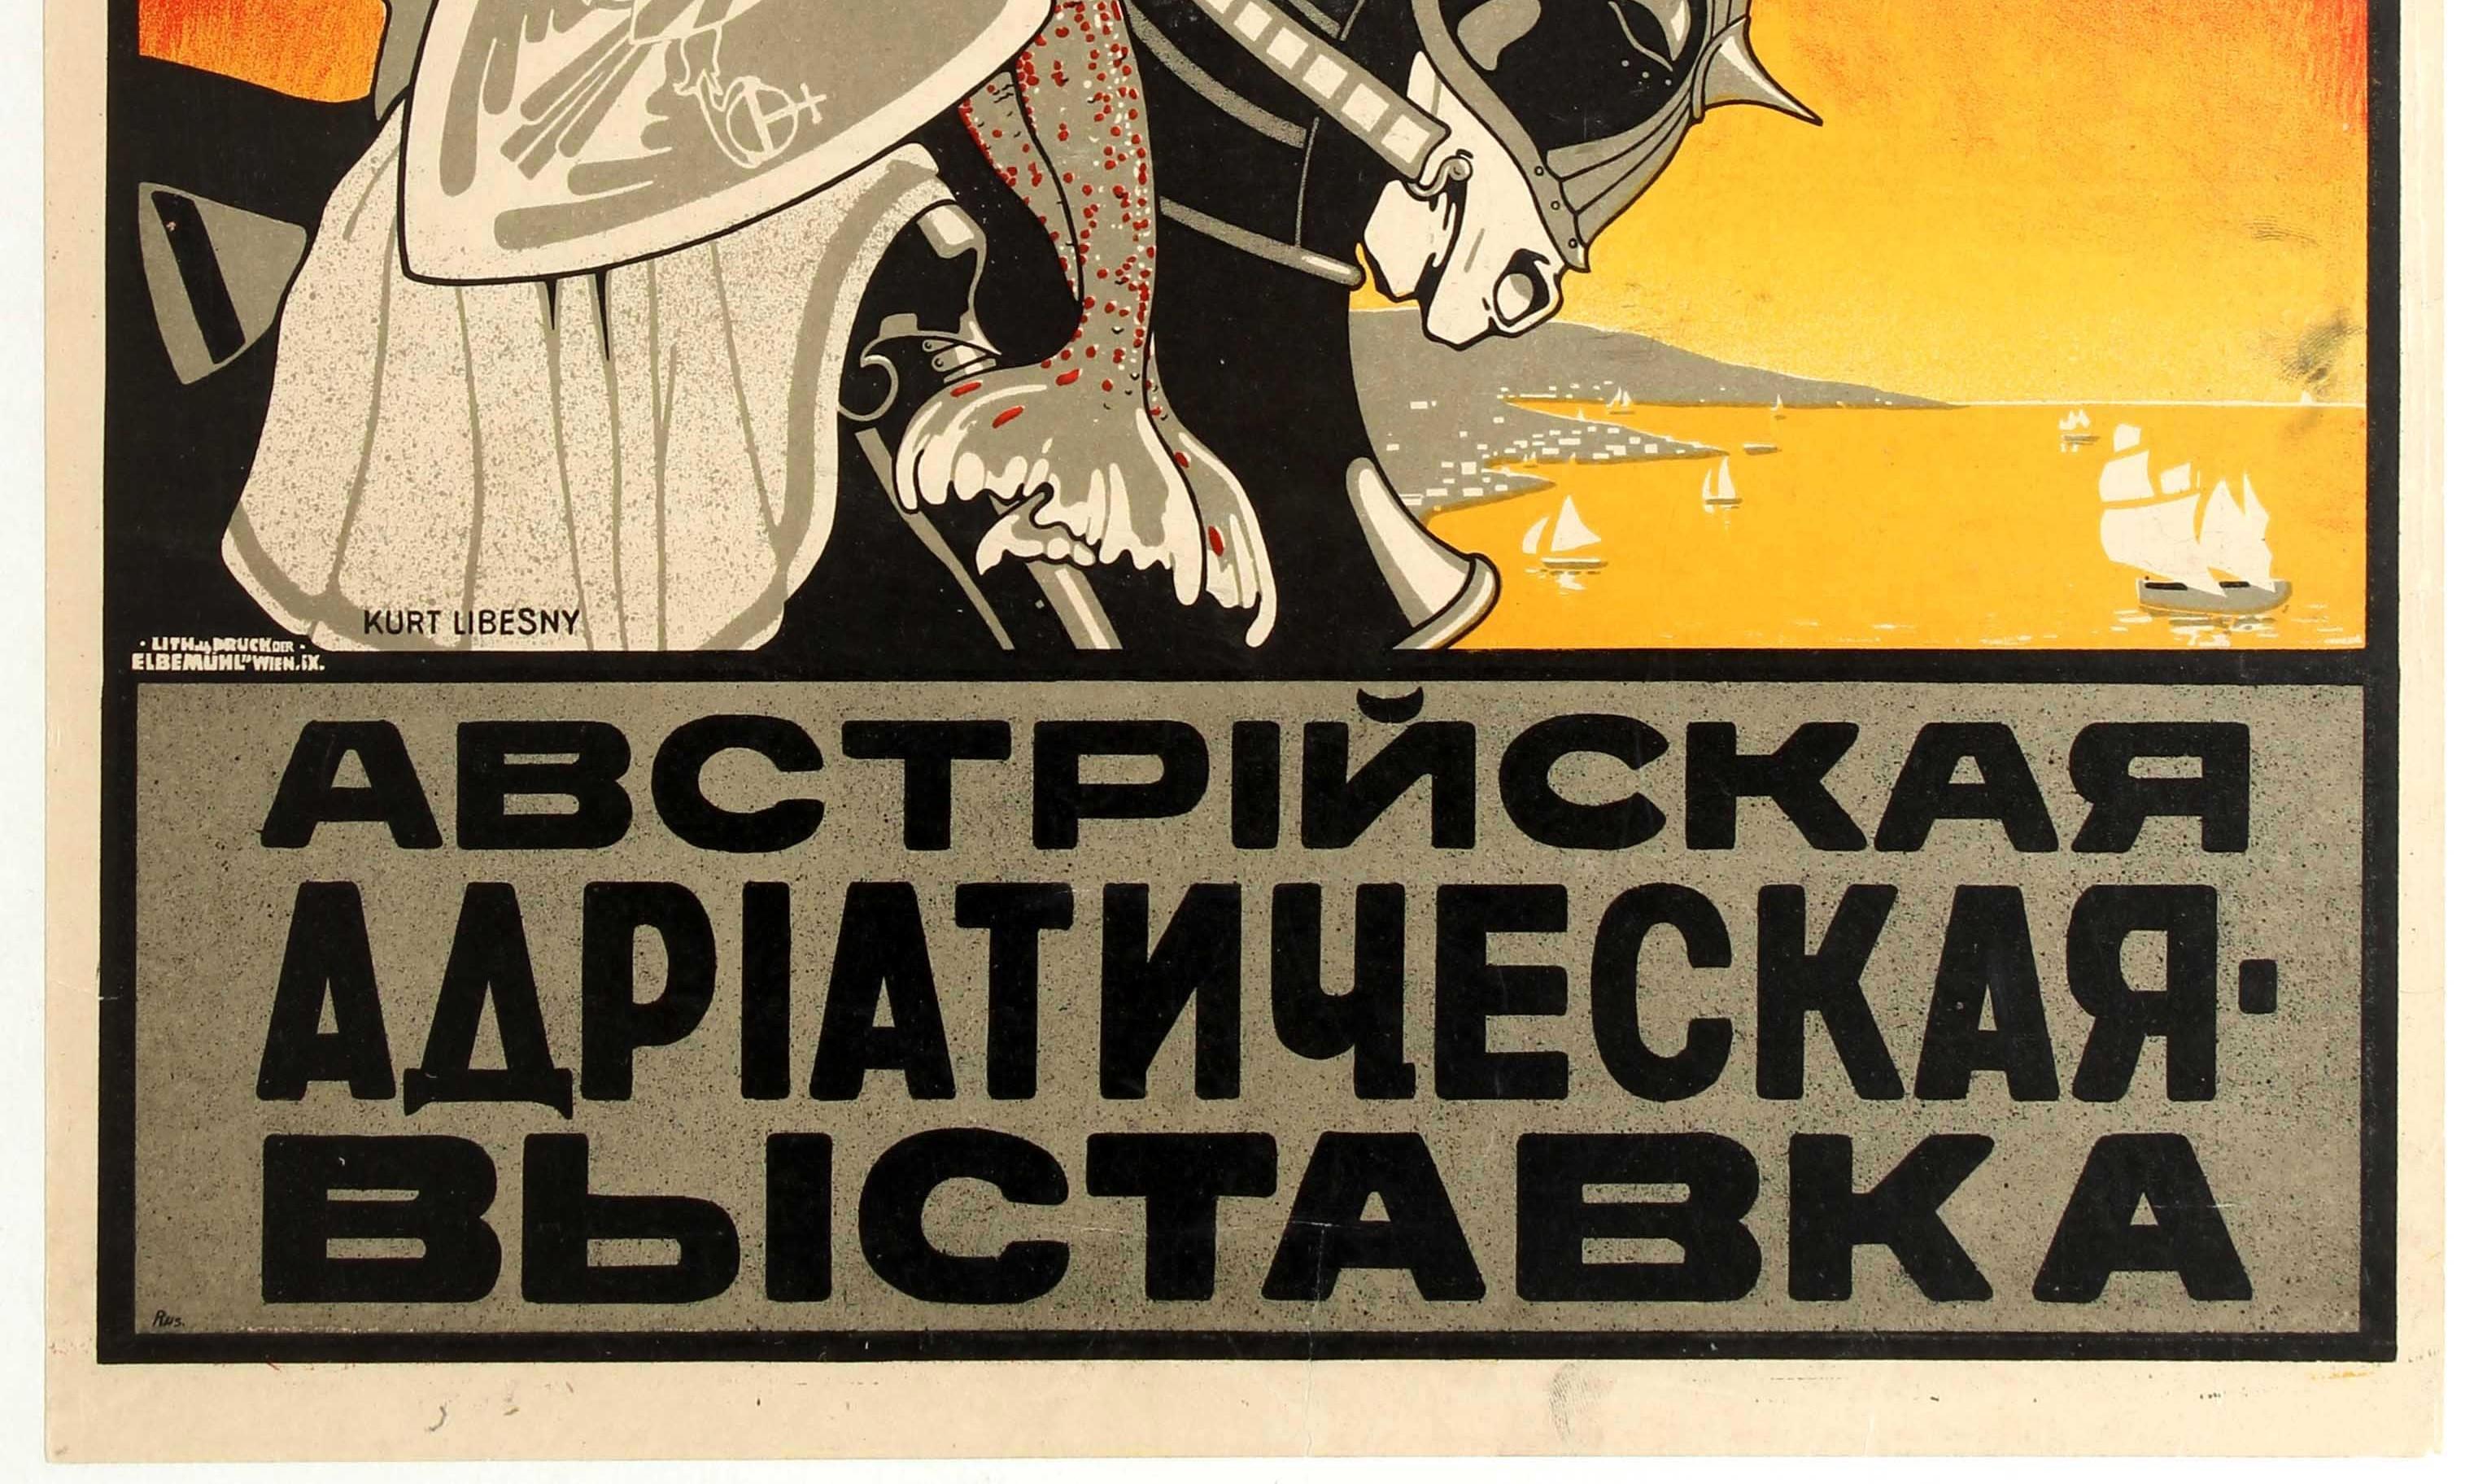 Originales antikes Reise-Werbeplakat für die Adria Ausstellung / The Adriatic Exhibition mit einer beeindruckenden Illustration von Kurt Libesny (1892-1938) eines Ritters in Rüstung mit Schild, der auf einem Pferd reitet, während er eine